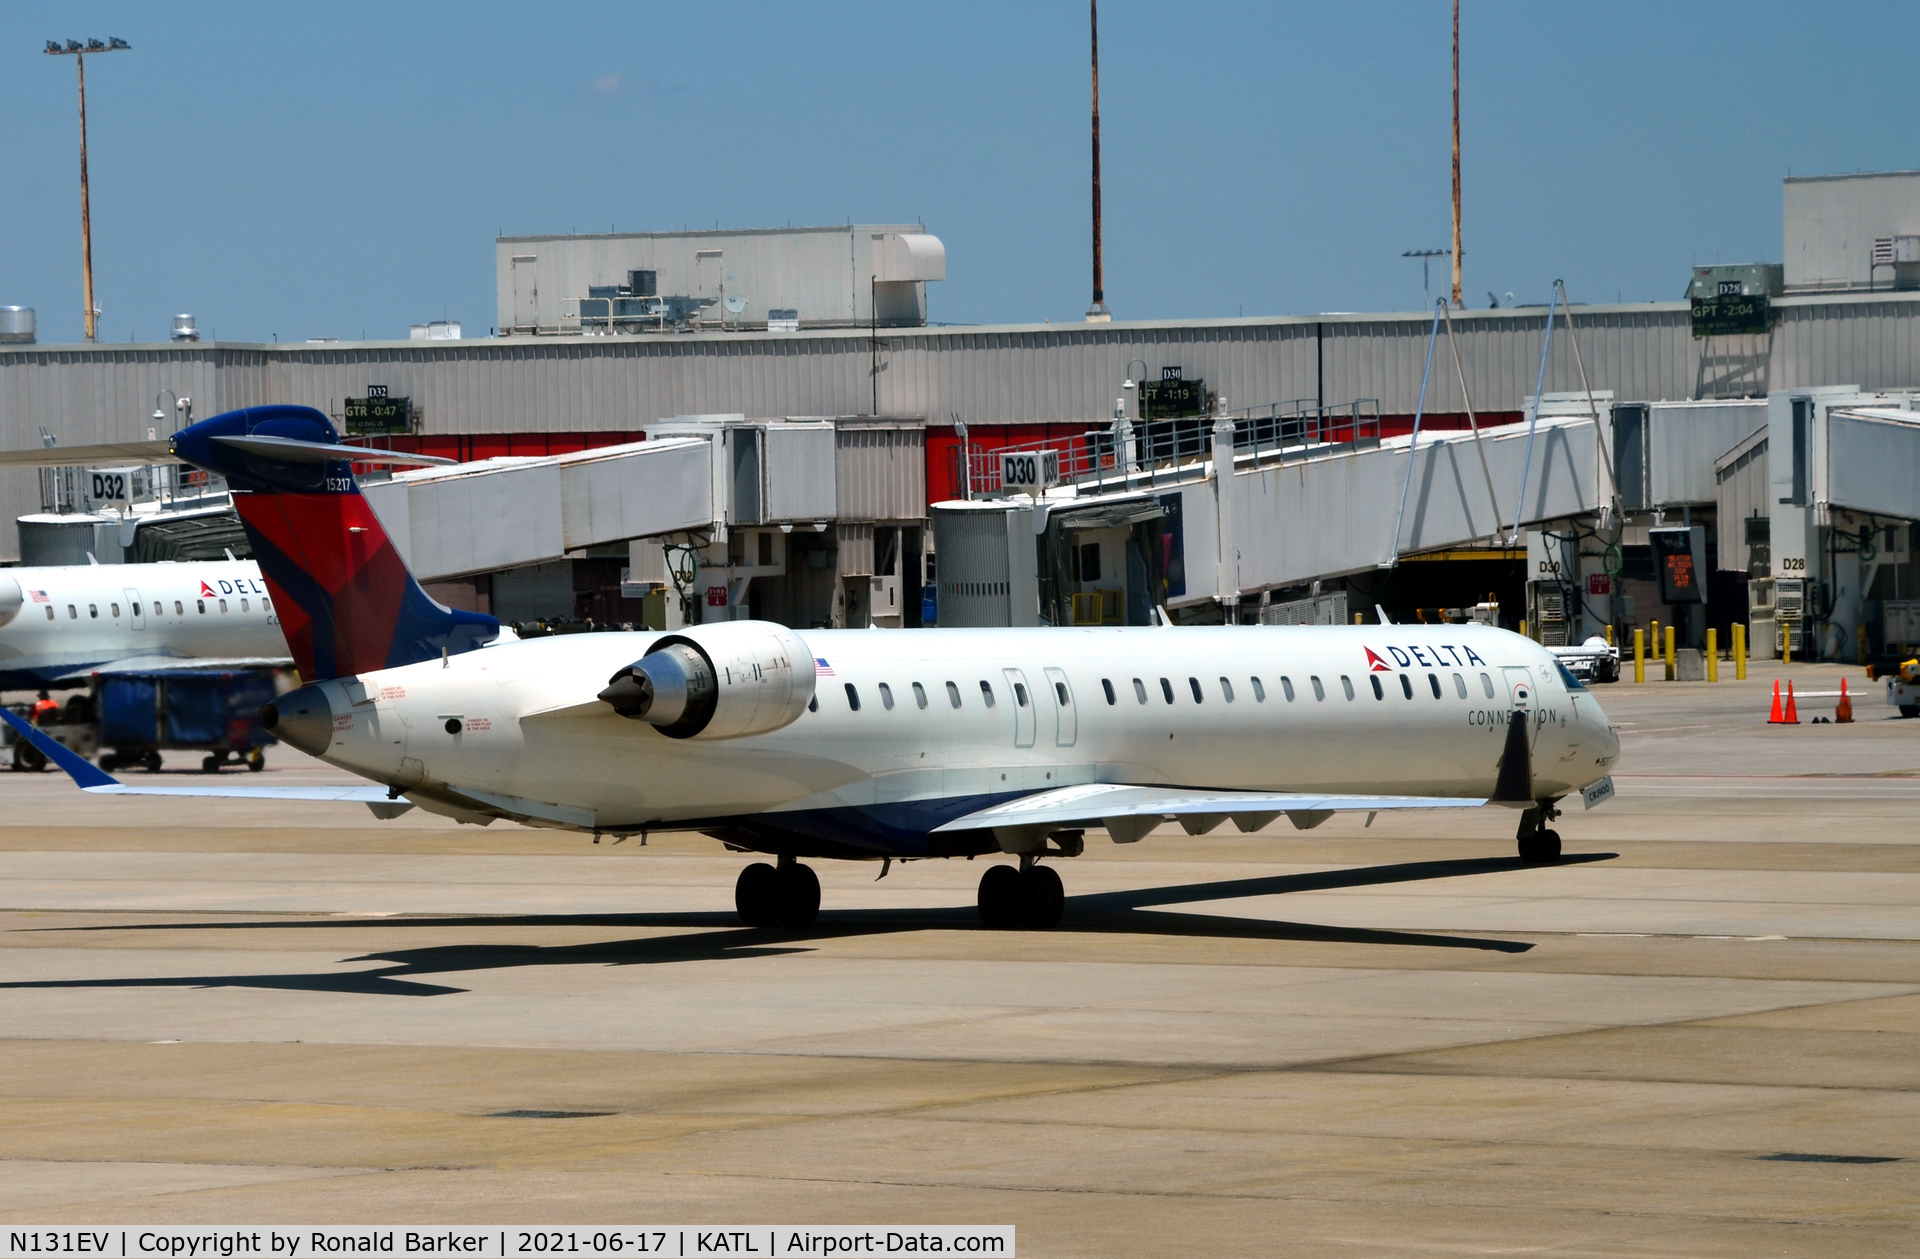 N131EV, 2008 Bombardier CRJ-900ER (CL-600-2D24) C/N 15217, Fix'n to taxi Atlanta